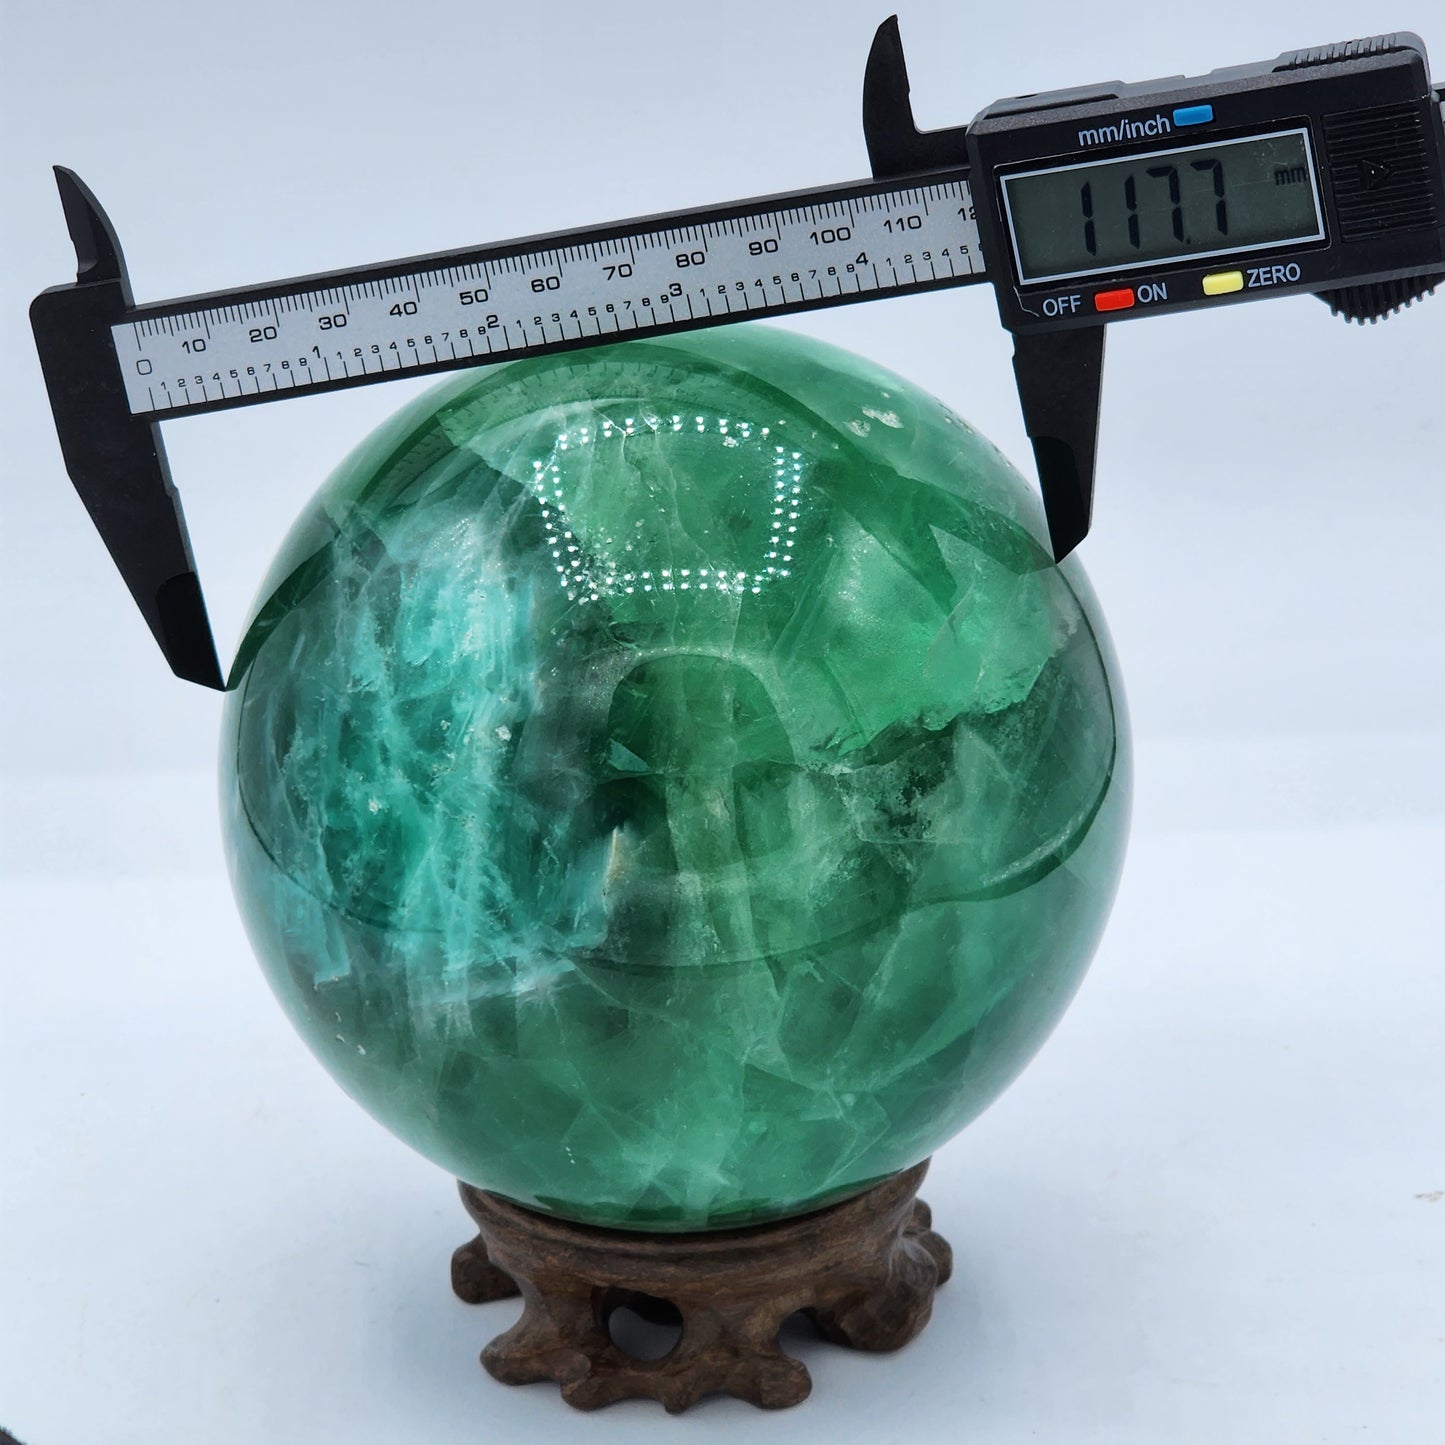 Fluorite Crystal Sphere